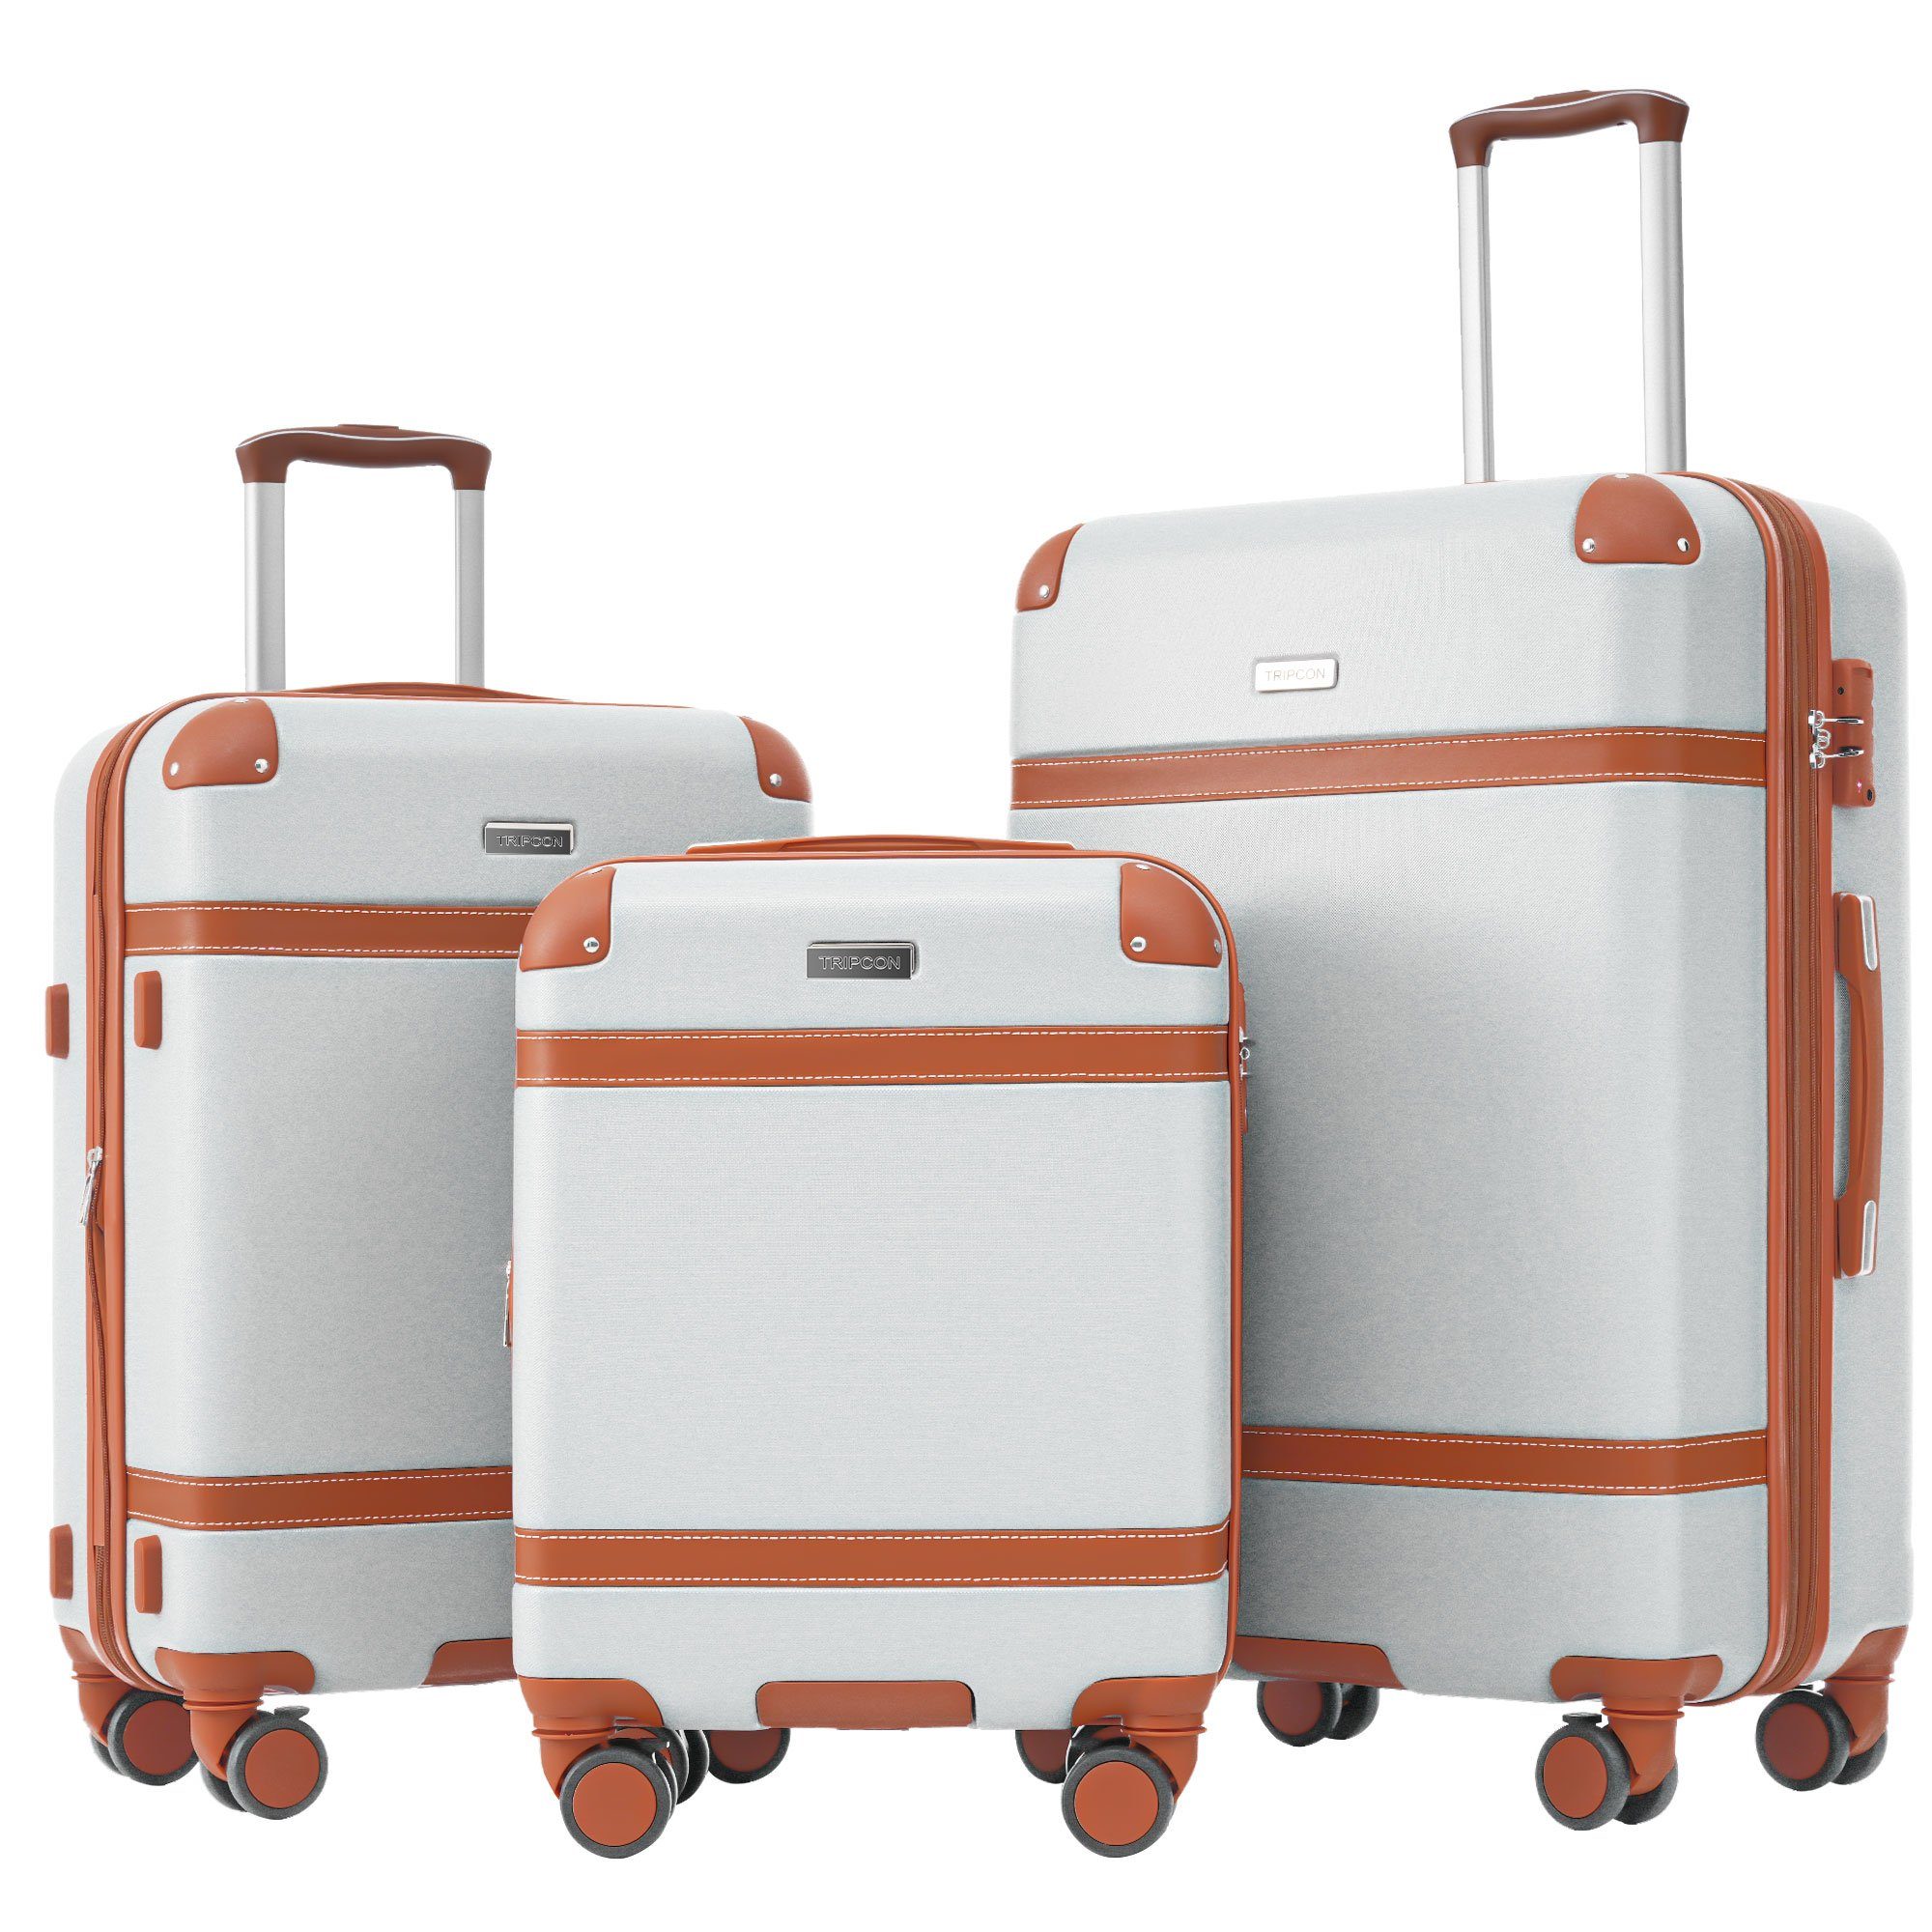 Ulife Trolleyset Kofferset Handgepäck Reisekoffer ABS-Material, TSA Zollschloss, 4 Rollen, (3 tlg) Creame